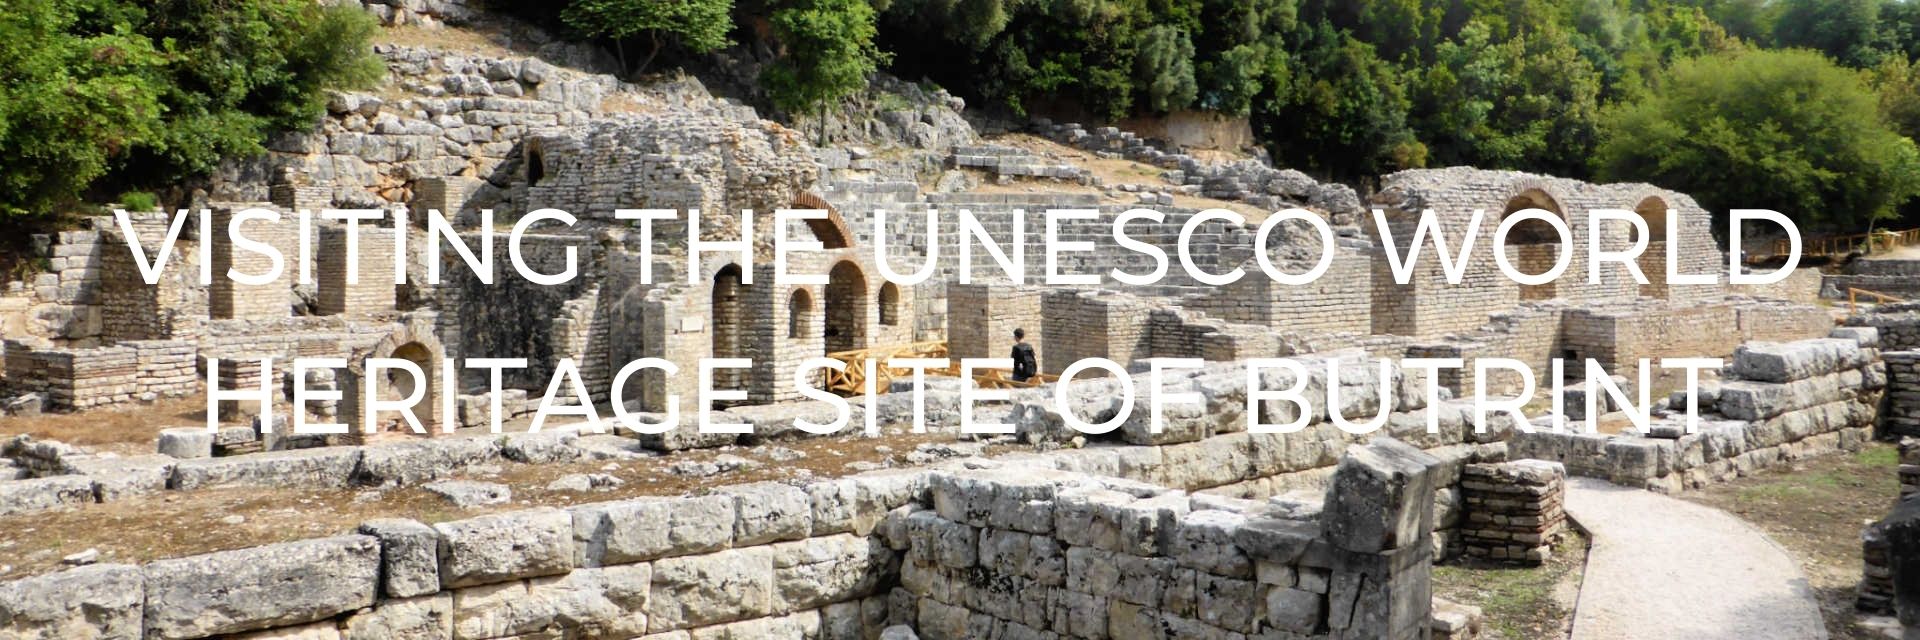 UNESCO World Heritage Site of Butrint Desktop Header